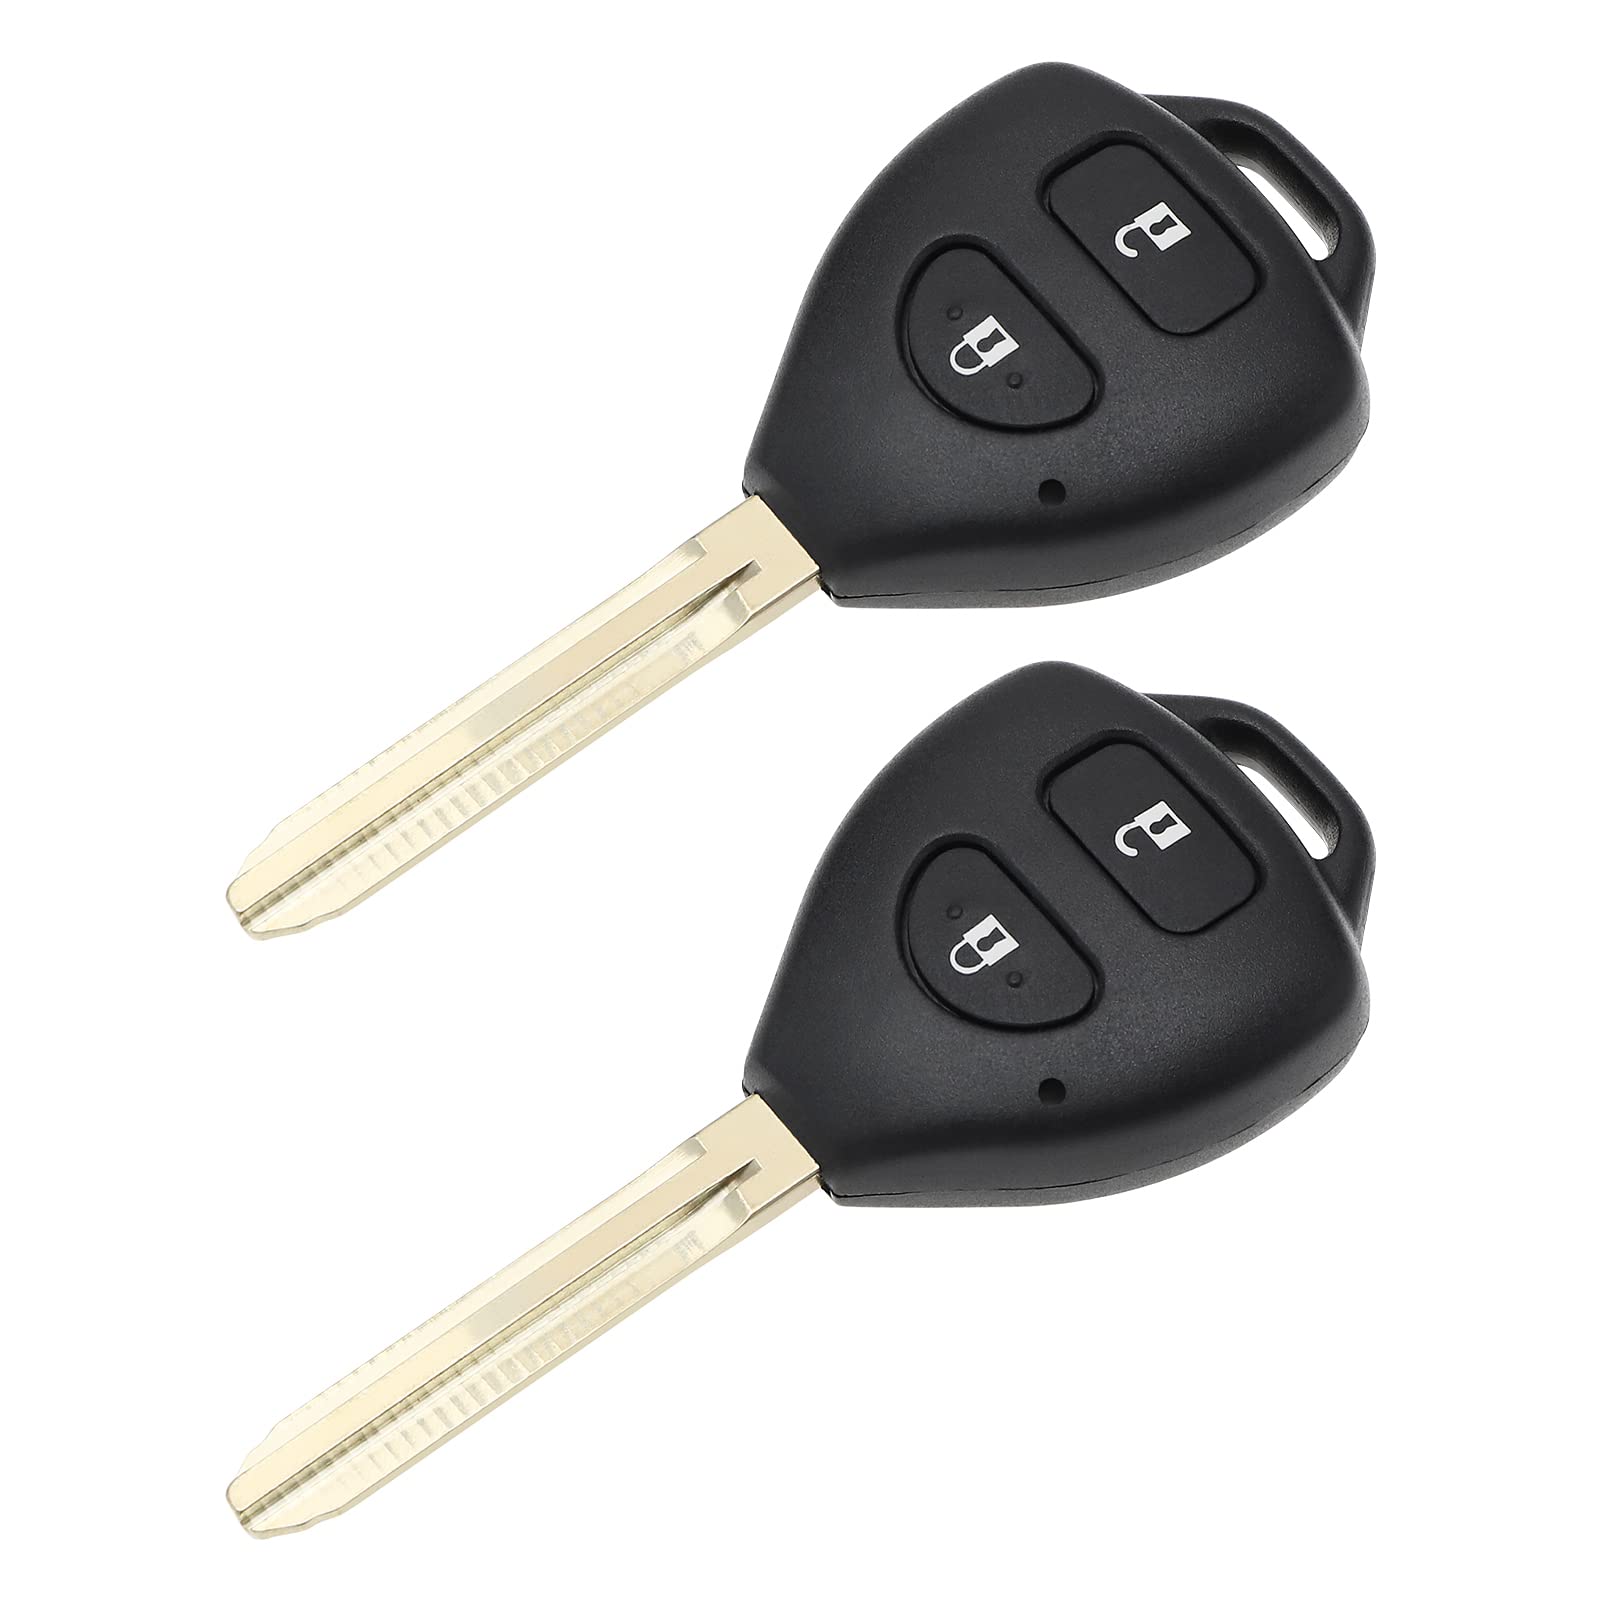 YINETTECH 2 Stück Autoschlüsselgehäuse mit ungeschliffenem Schlüsselblatt, kompatibel mit RAV4 Auris Corolla Hilux Avensis 2 Tasten Schlüsselanhänger Gehäuse Ersatz Schlüsselabdeckung von YINETTECH